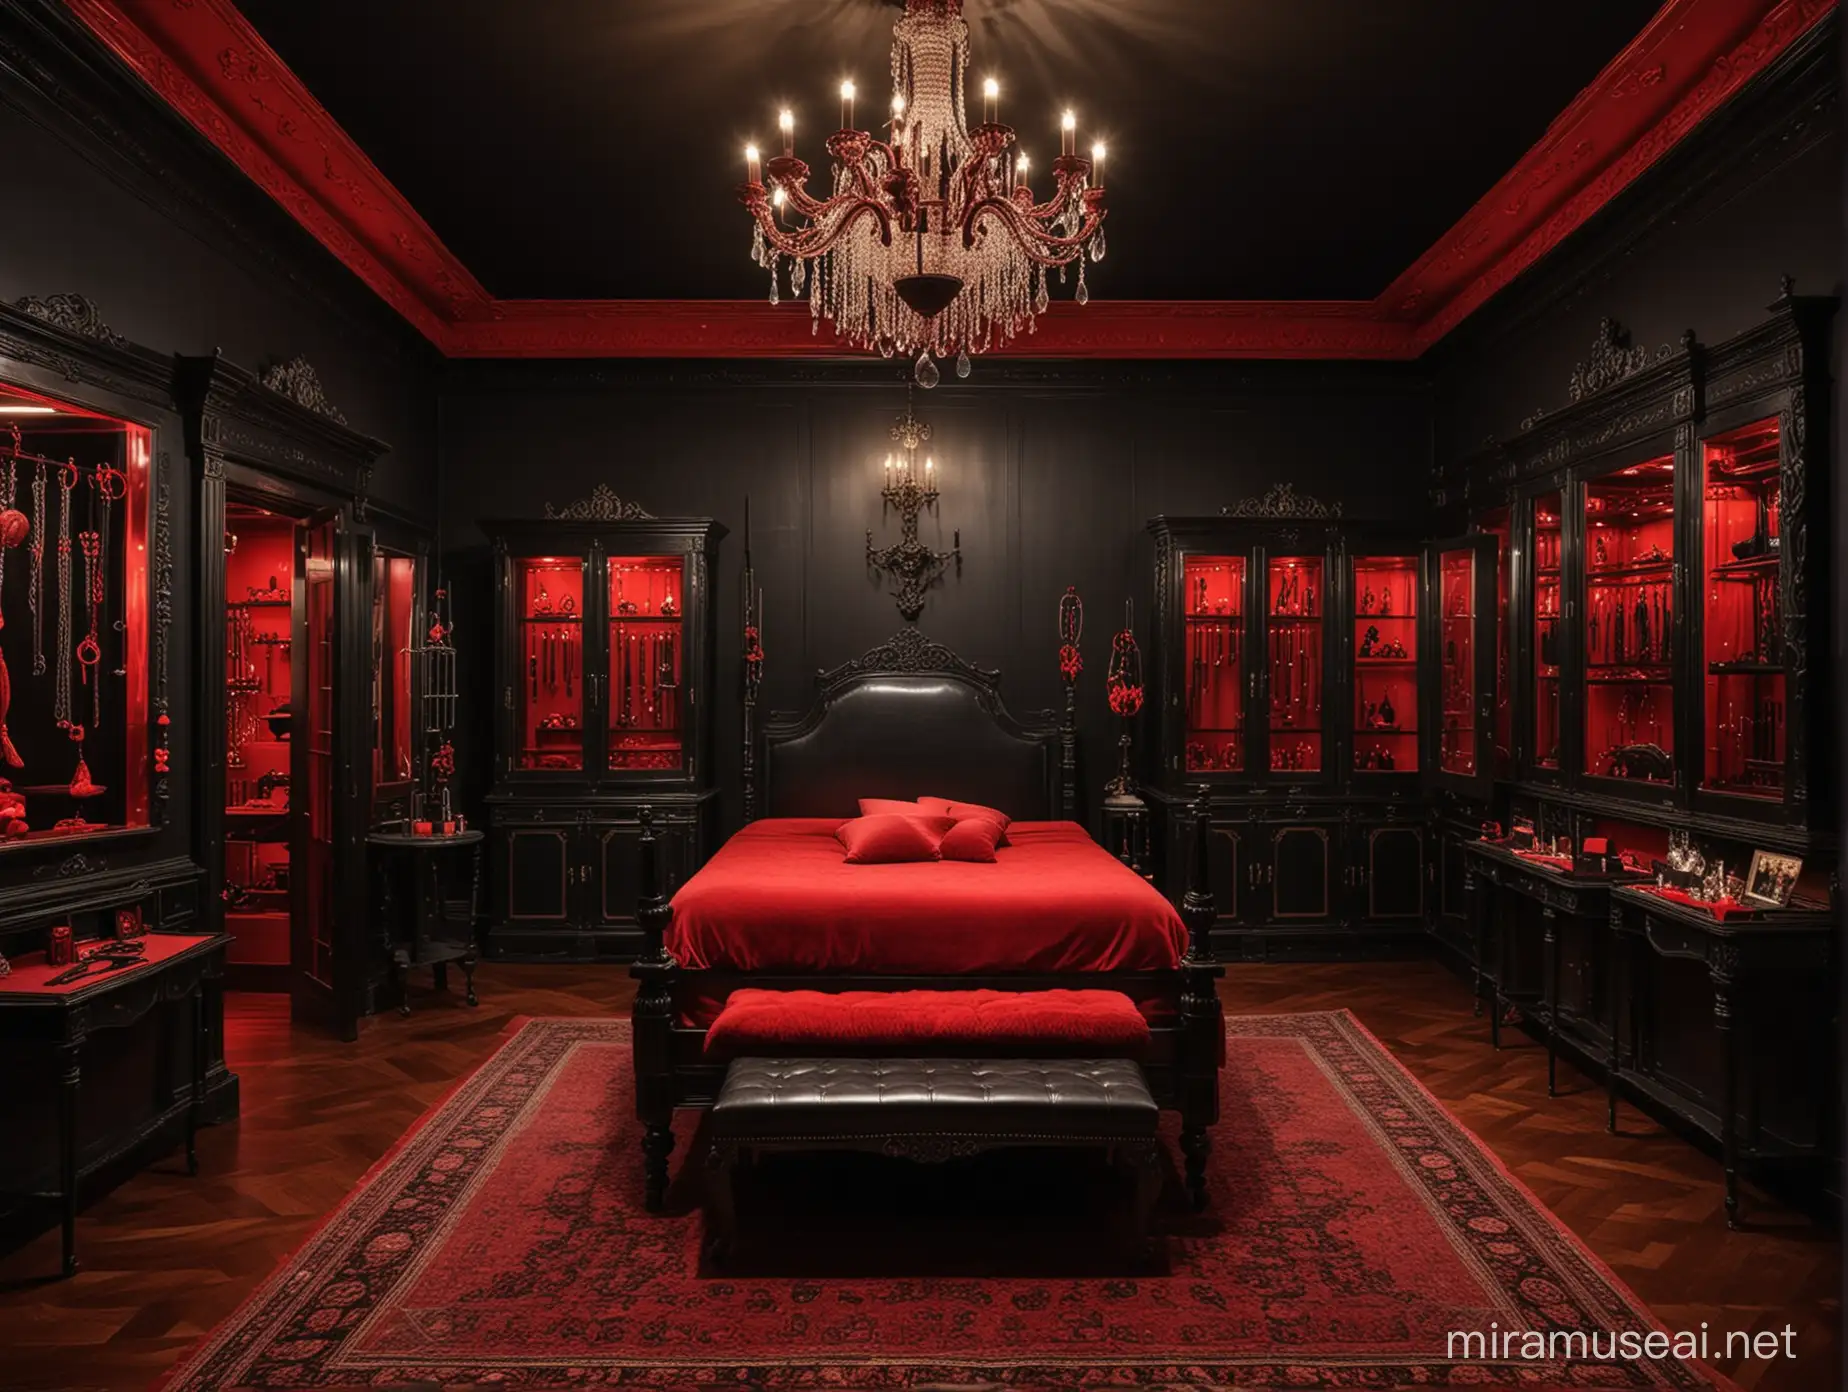 Una habitación de castigo sexual de lujo al estilo elegante antiguo con paredes negras con decoraciones en rojo, con vitrinas elegantes con juguetes sexuales y látigos de castigo, una cama para castigos sexuales y un candelabro de lujo en el techo con iluminación de luces rojas 